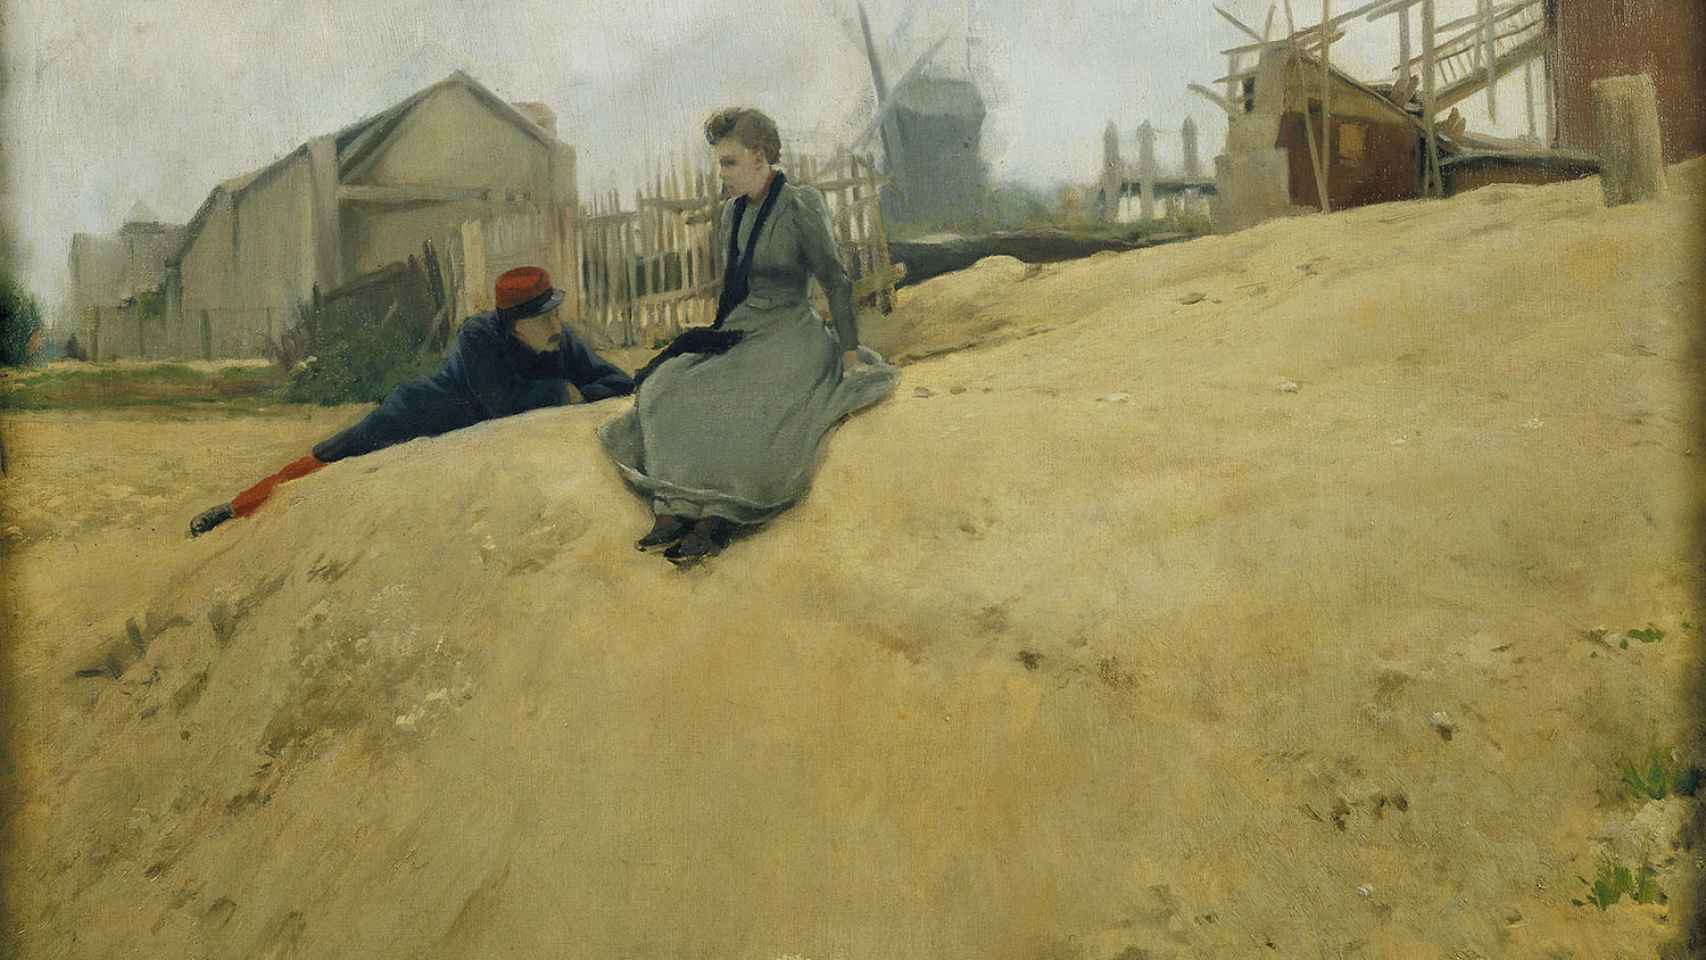 Suzanne Valadon, en la obra de Santiago Rusiñol 'En campaña', de 1891